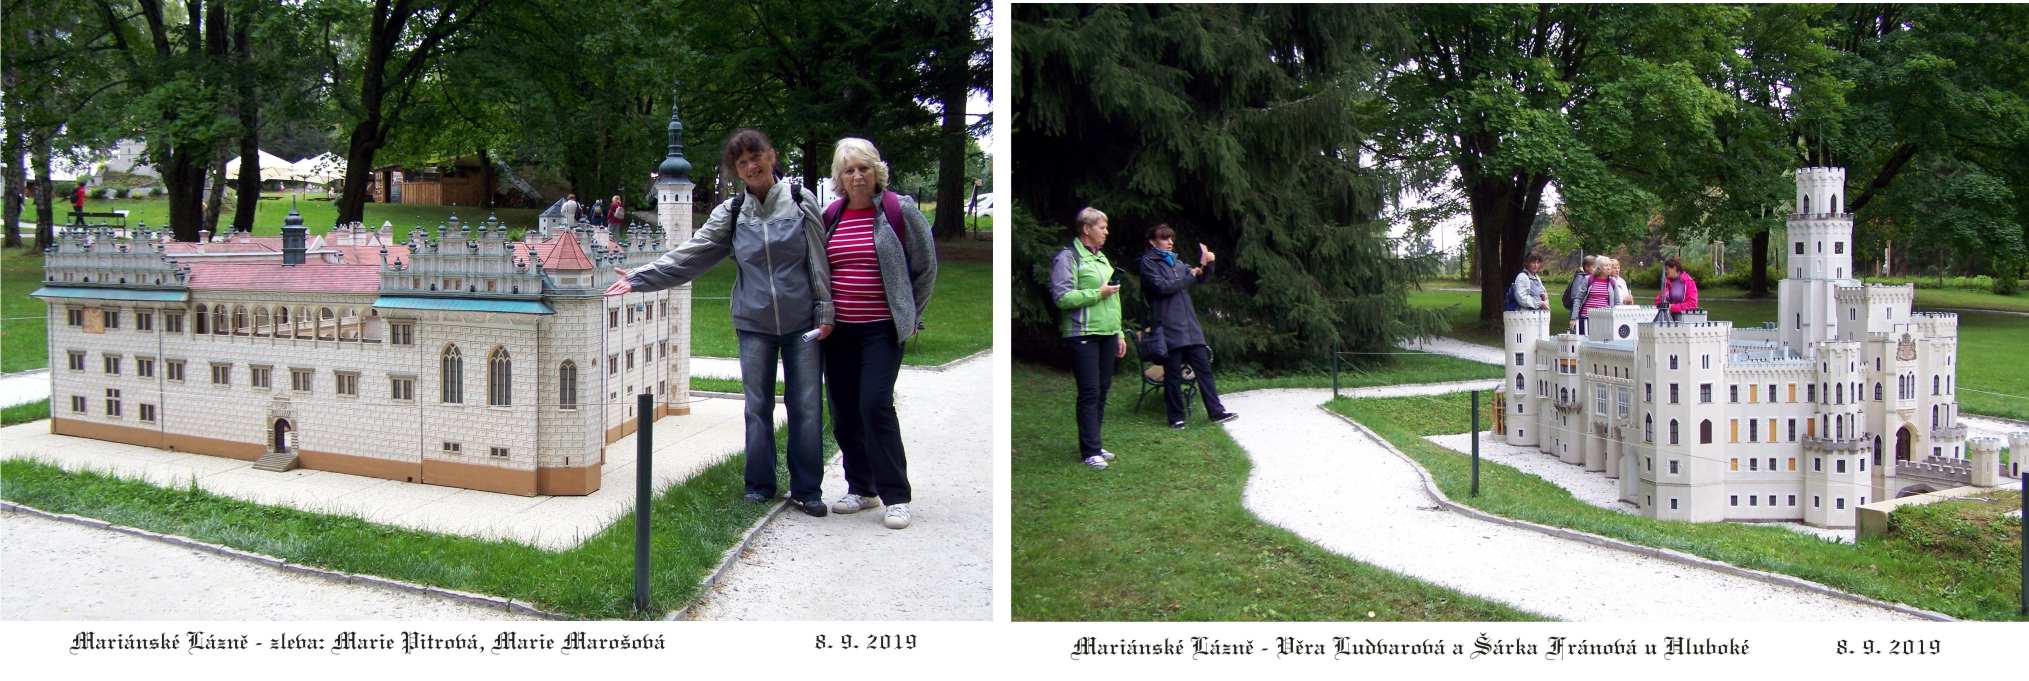 Modely v Boheminium parku nás učarovaly.